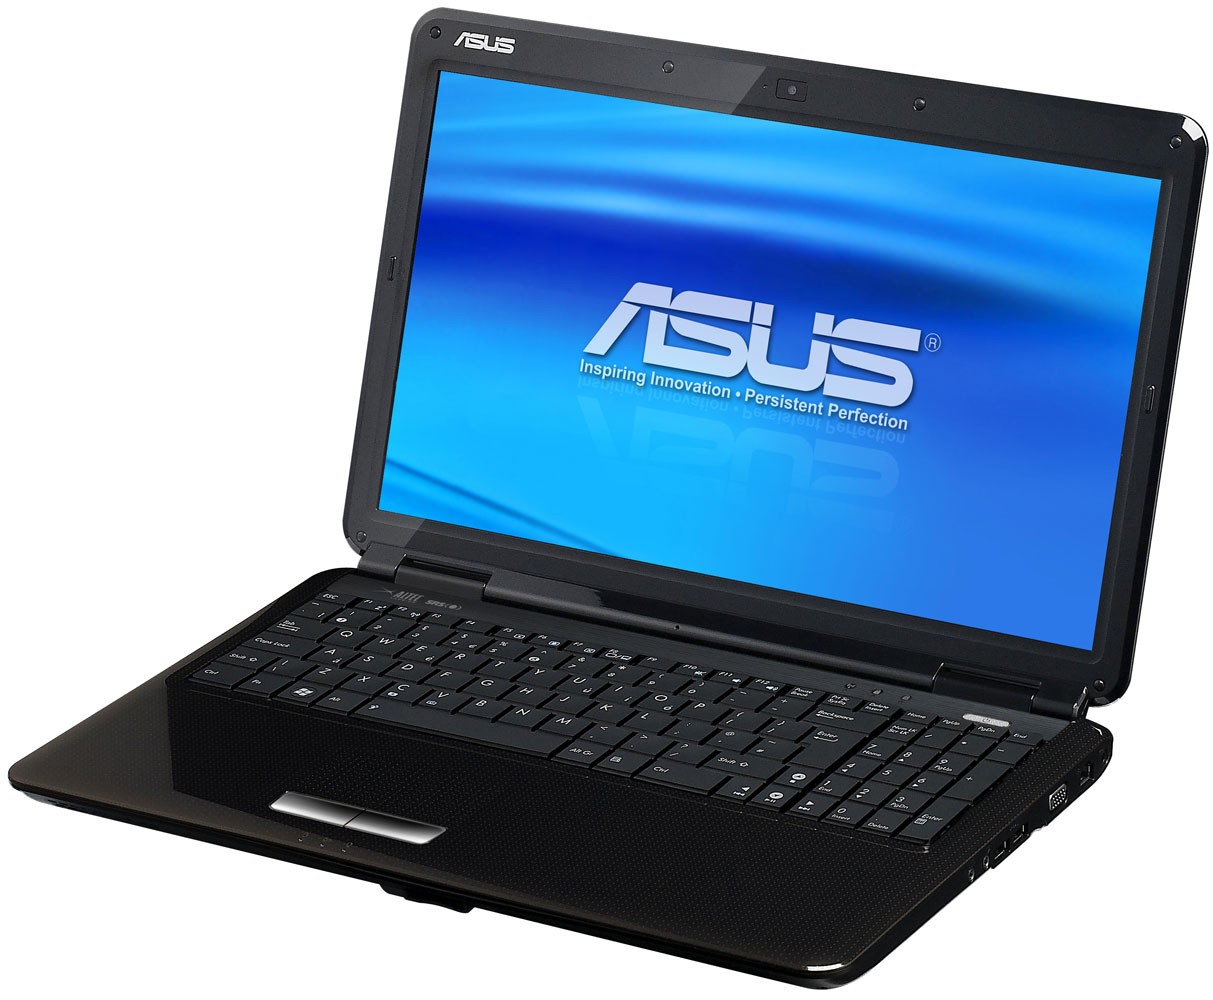 Ноутбук Asus K50ij Характеристики Цена